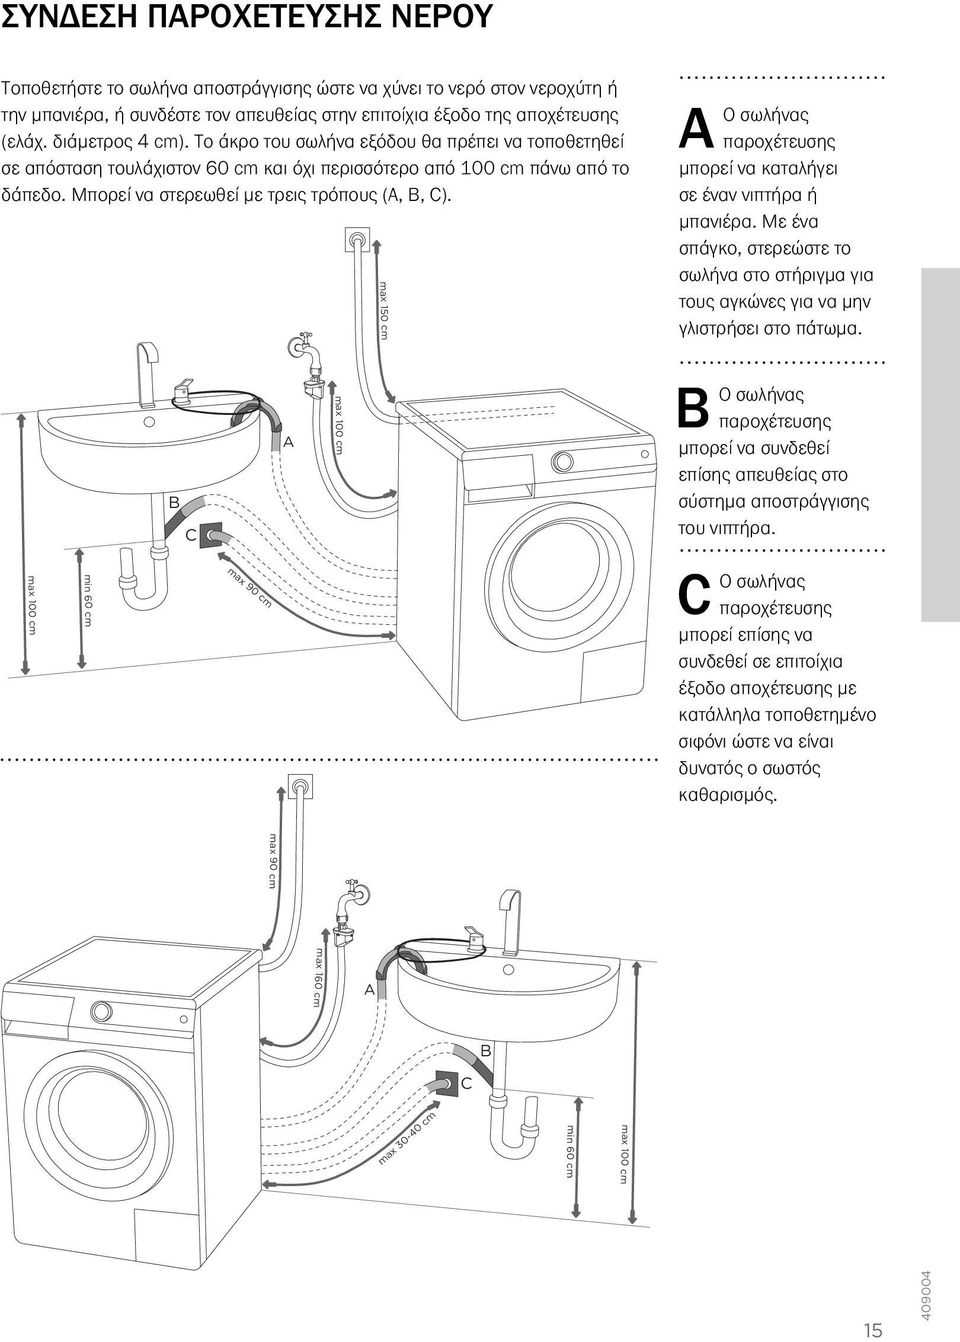 Μπορεί να στερεωθεί με τρεις τρόπους (A, B, C). A Ο σωλήνας παροχέτευσης μπορεί να καταλήγει σε έναν νιπτήρα ή μπανιέρα.